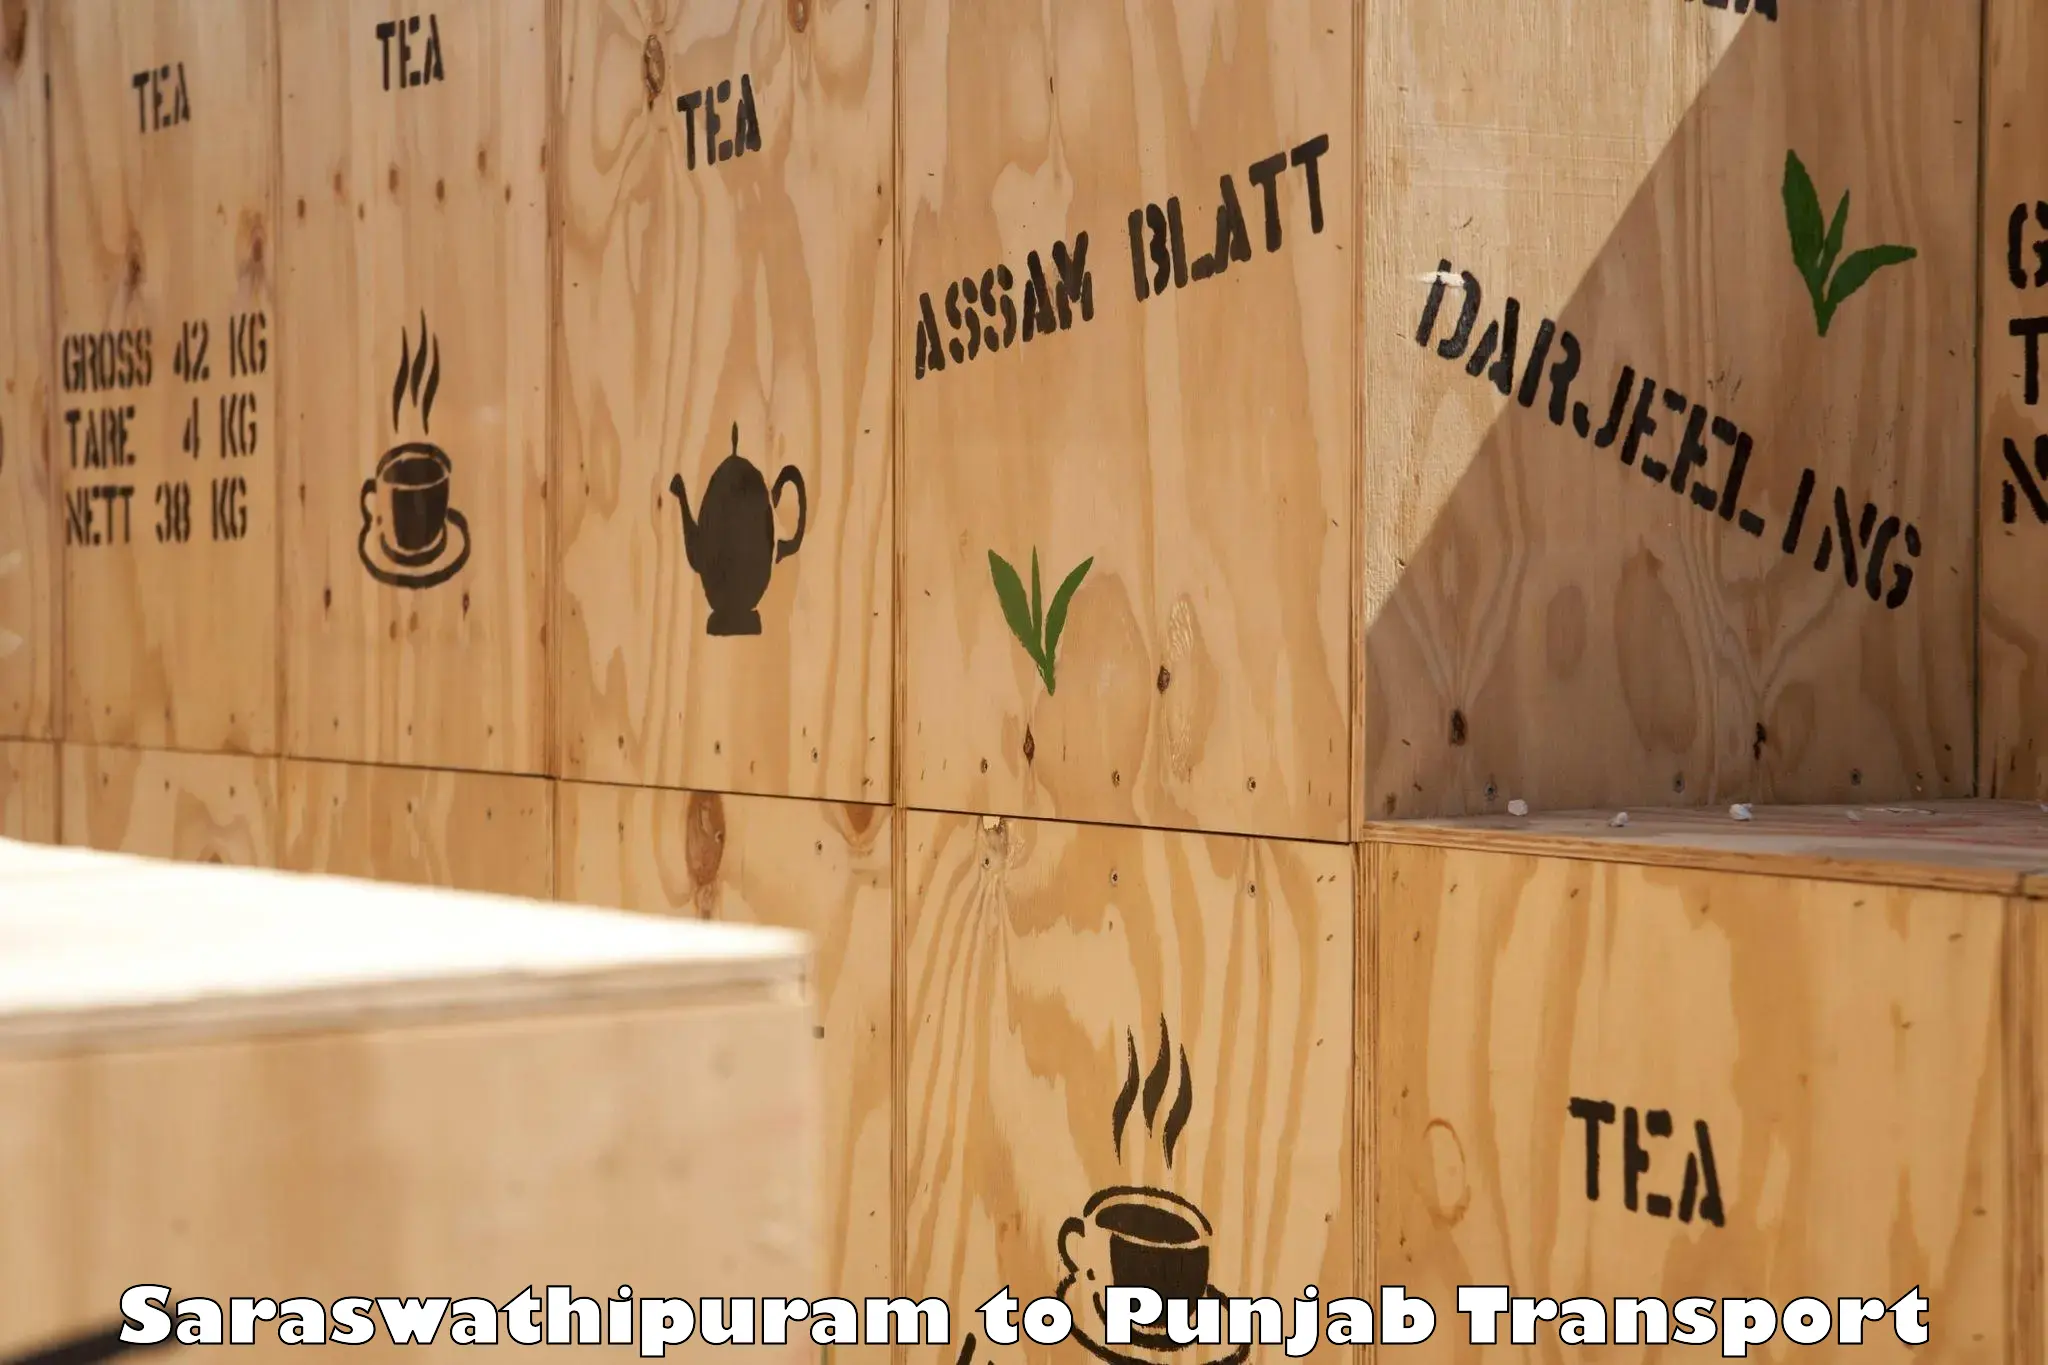 Intercity goods transport Saraswathipuram to Guru Nanak Dev University Amritsar